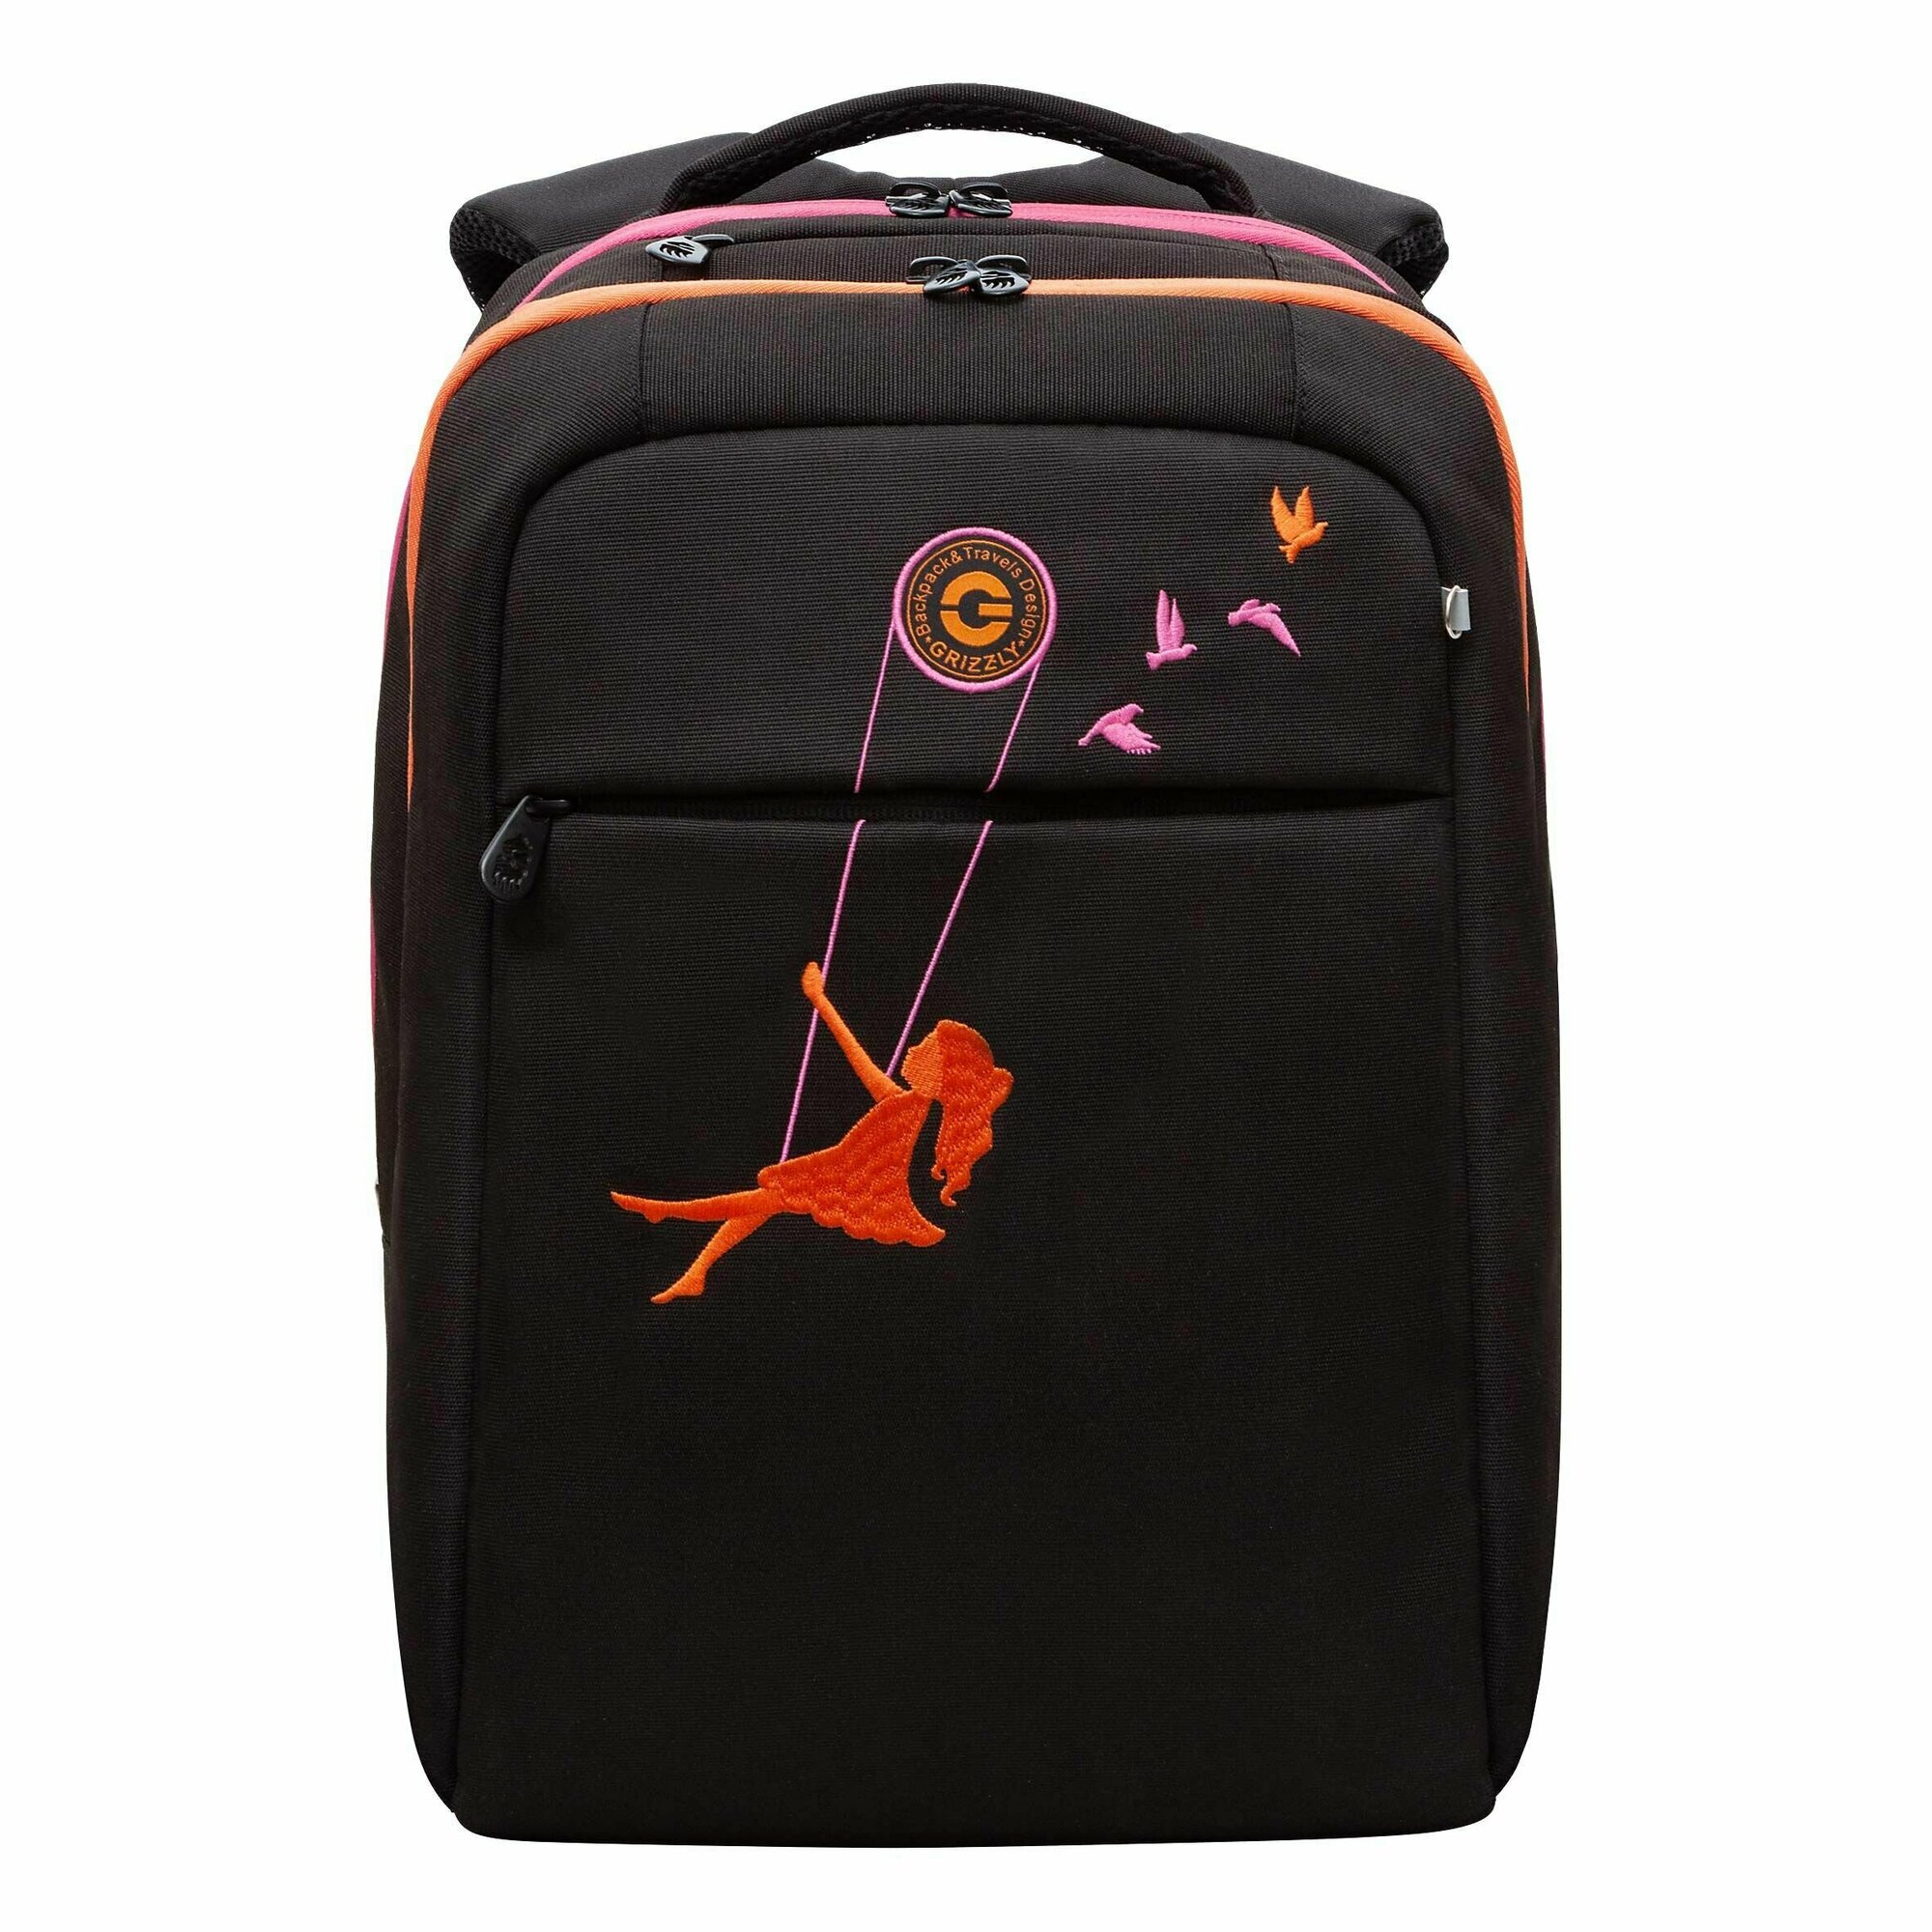 Рюкзак школьный для девочки подростка, с ортопедической спинкой, для средней школы, GRIZZLY (черный - оранжевый)